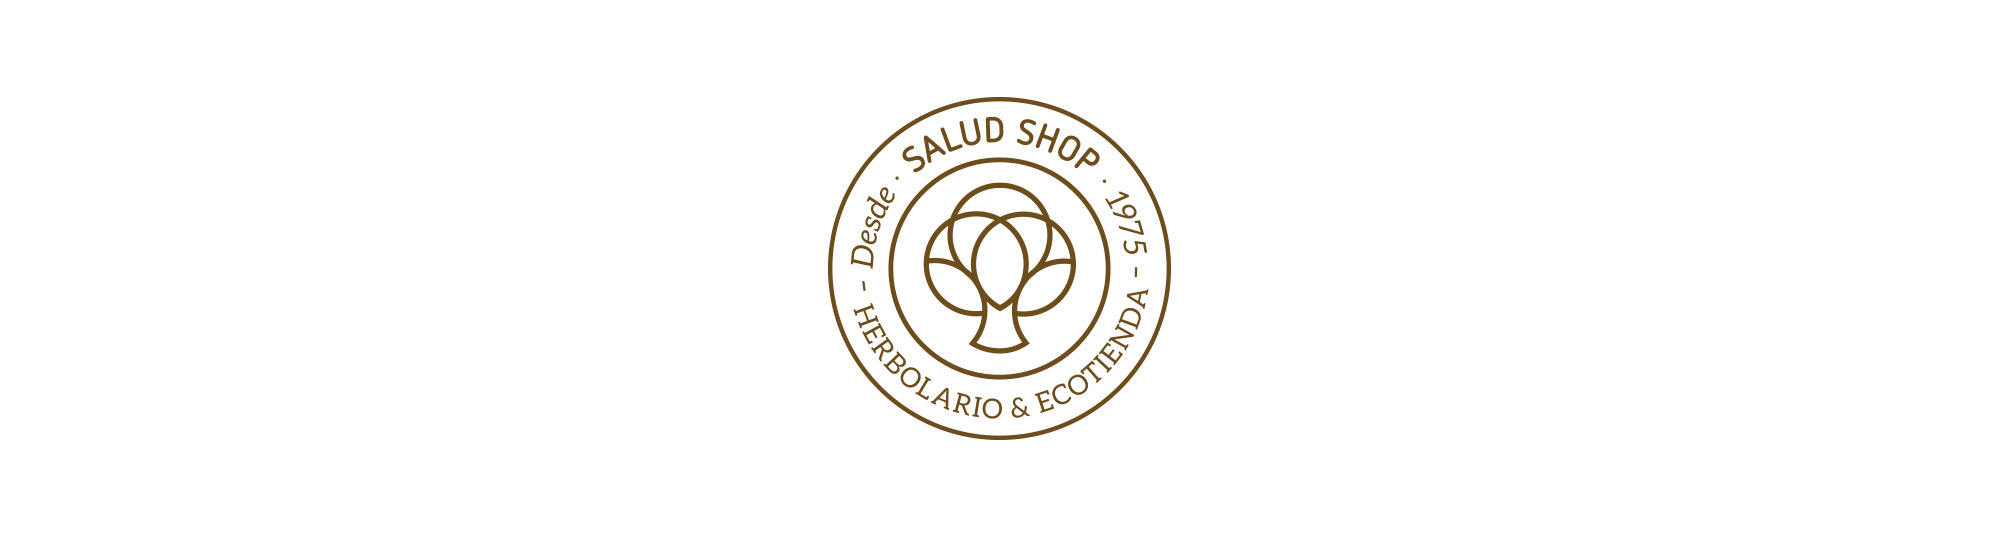 Diseño del escudo del herbolario Salud Shop